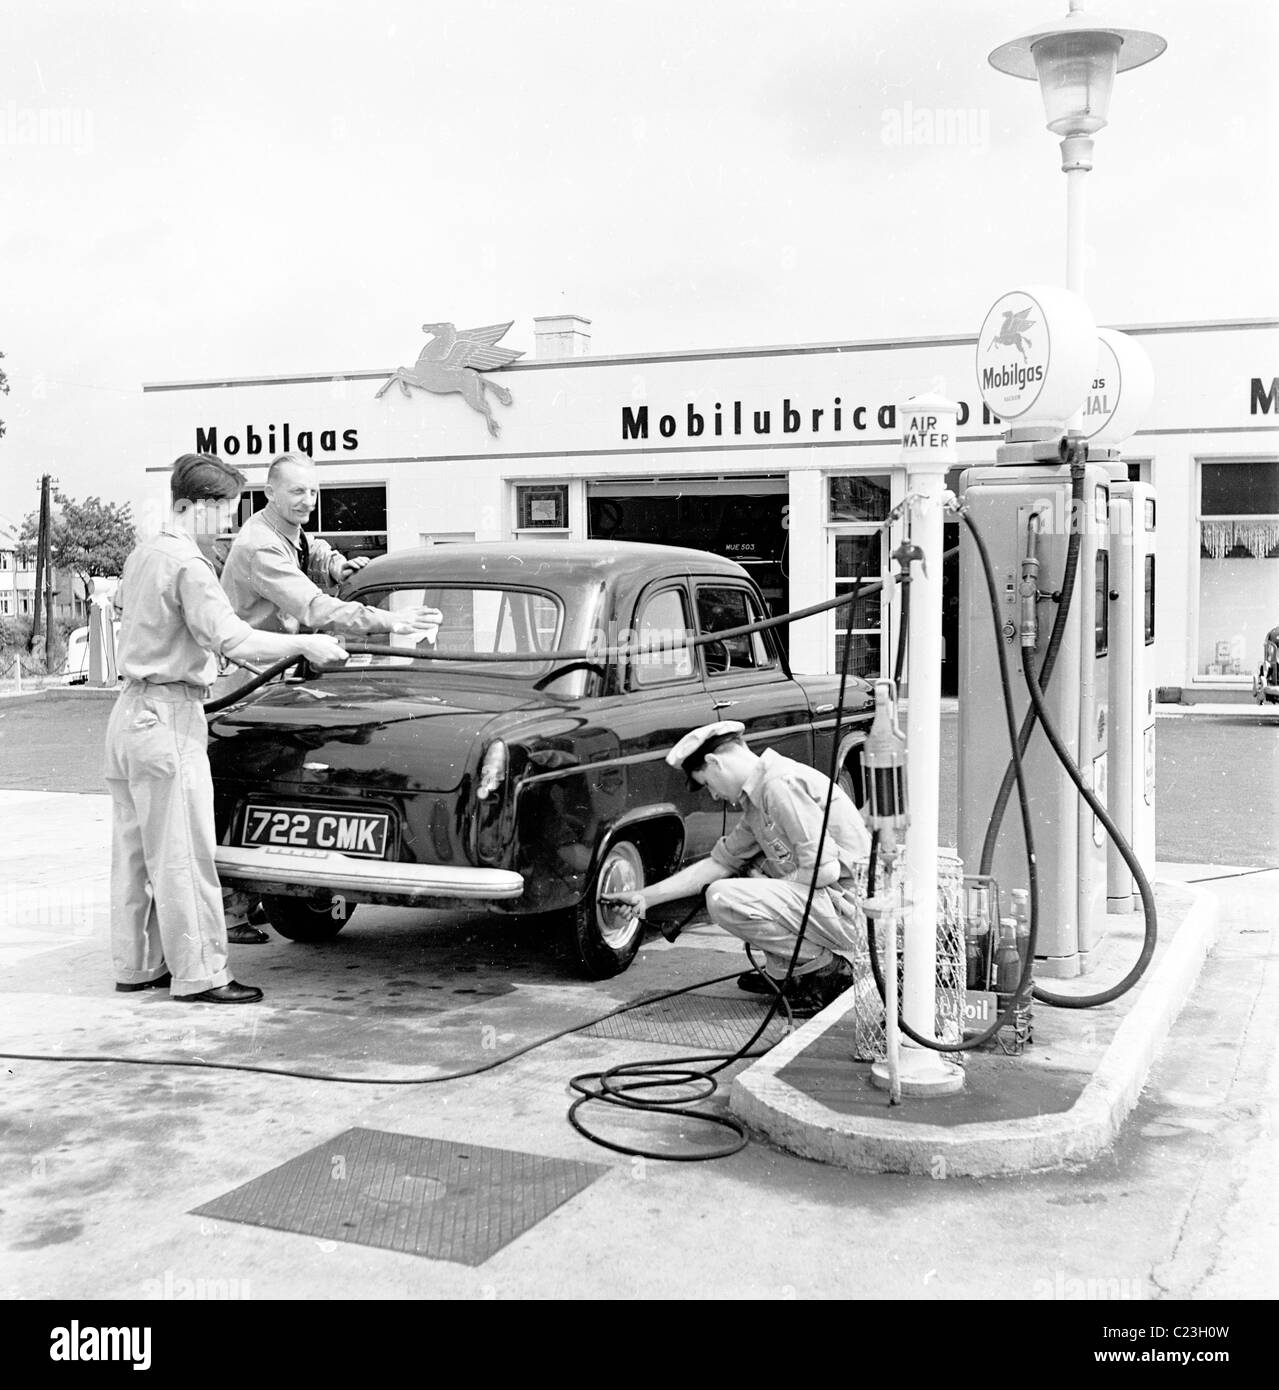 Drei Teilnehmer-service ein Auto auf dem Vorplatz der Mobilgas Garage, The Whirlwind in diesem historischen Bild aus den 1950er Jahren. Stockfoto